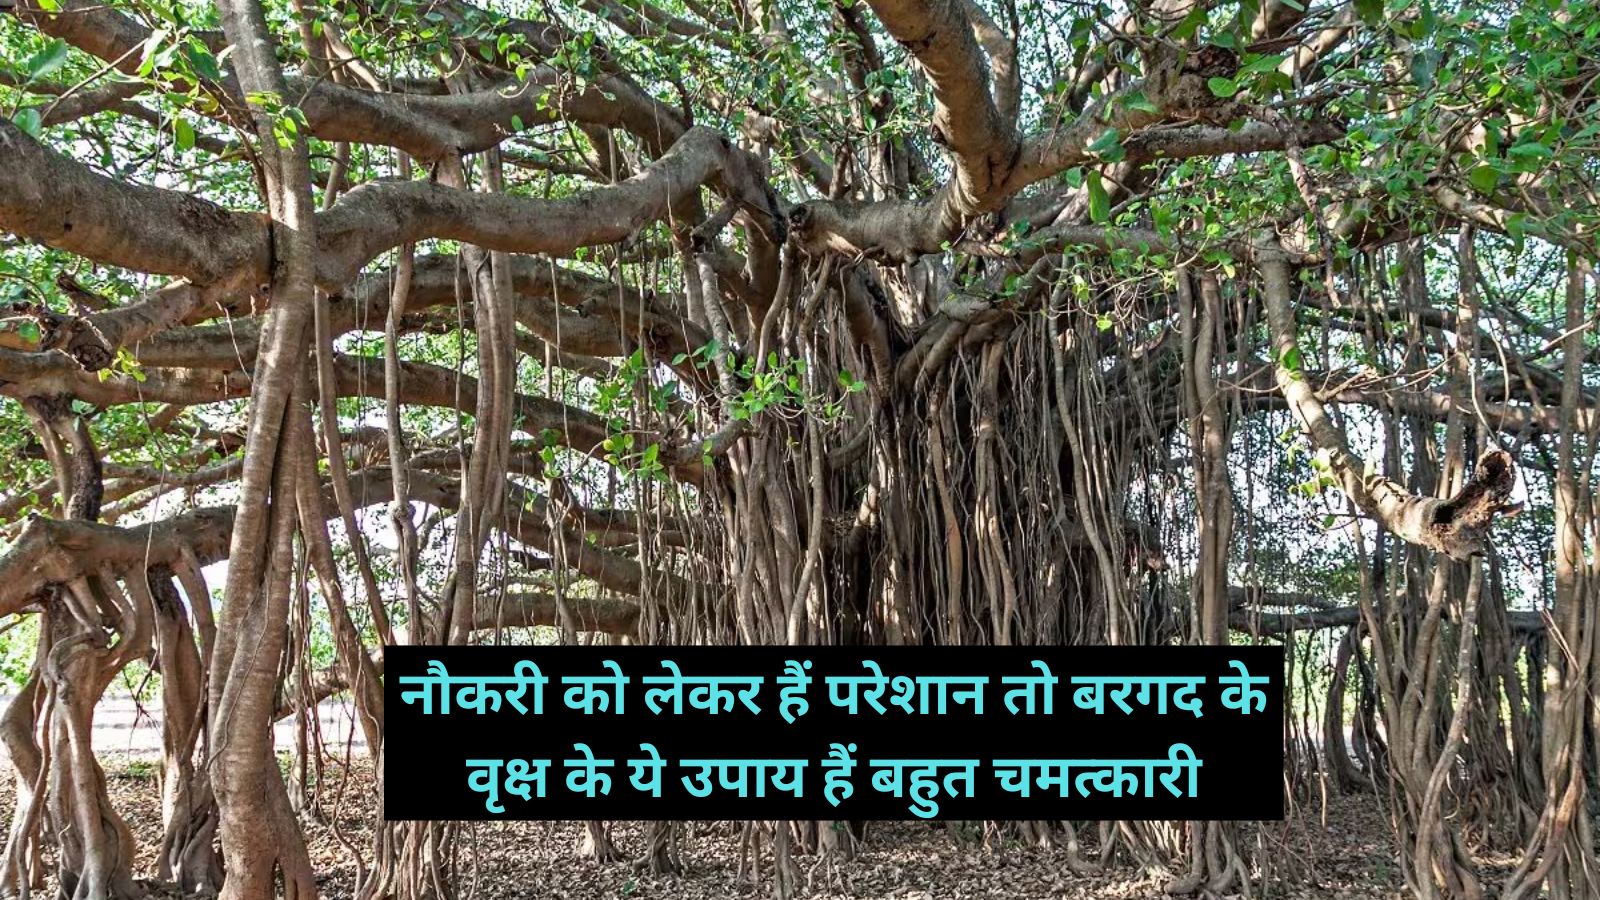 Bargad Ke Upay: नौकरी को लेकर हैं परेशान तो बरगद के वृक्ष के ये उपाय हैं बहुत चमत्कारी, मिलेगा फायदा